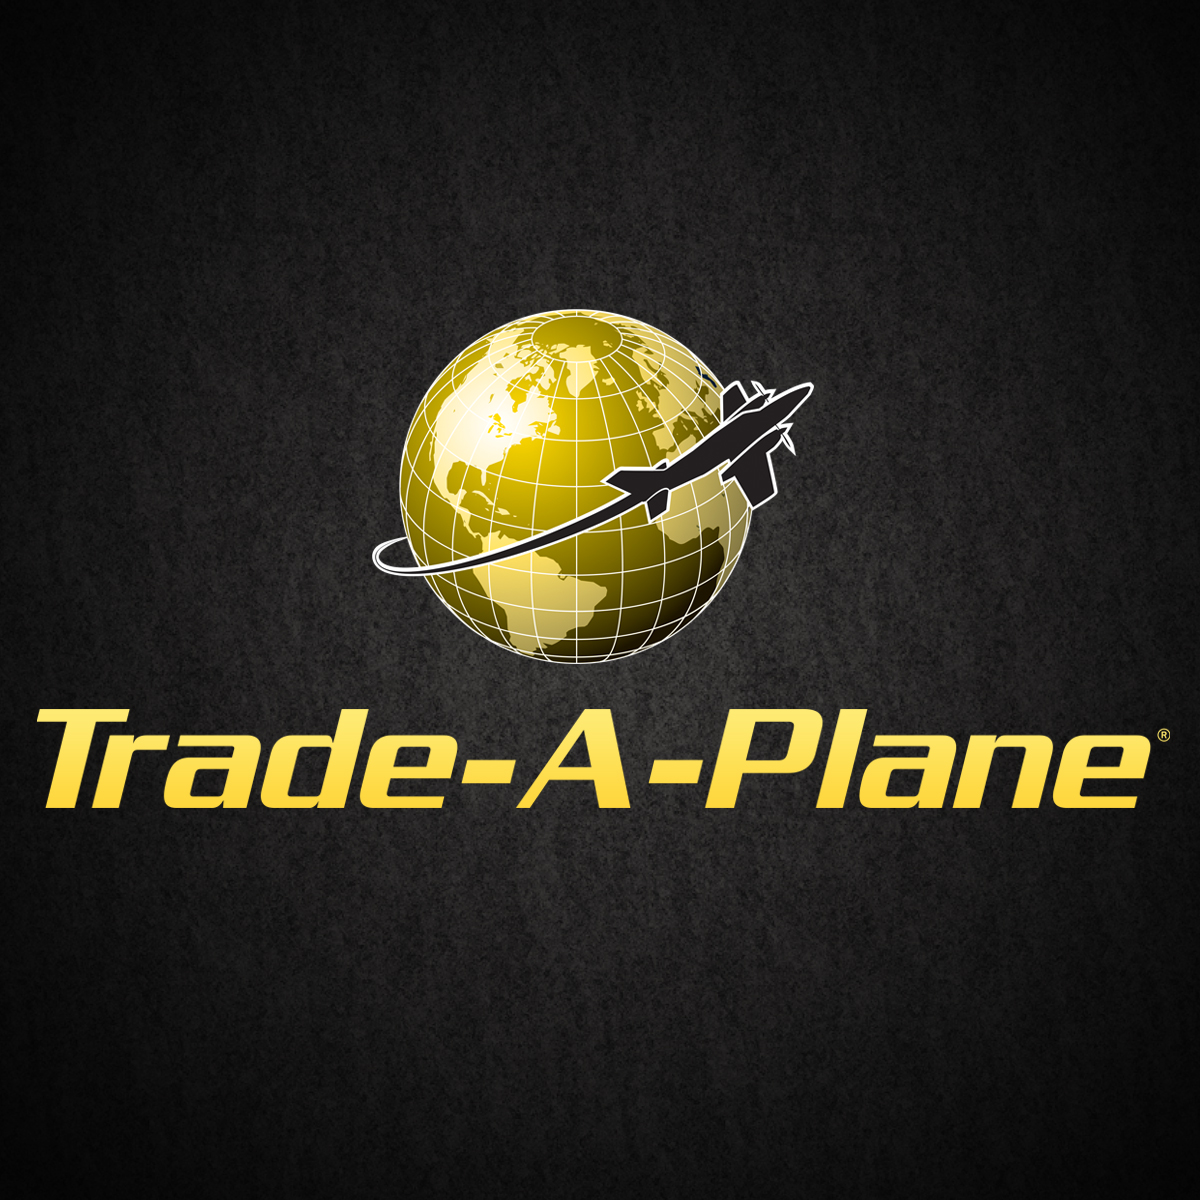 www.trade-a-plane.com